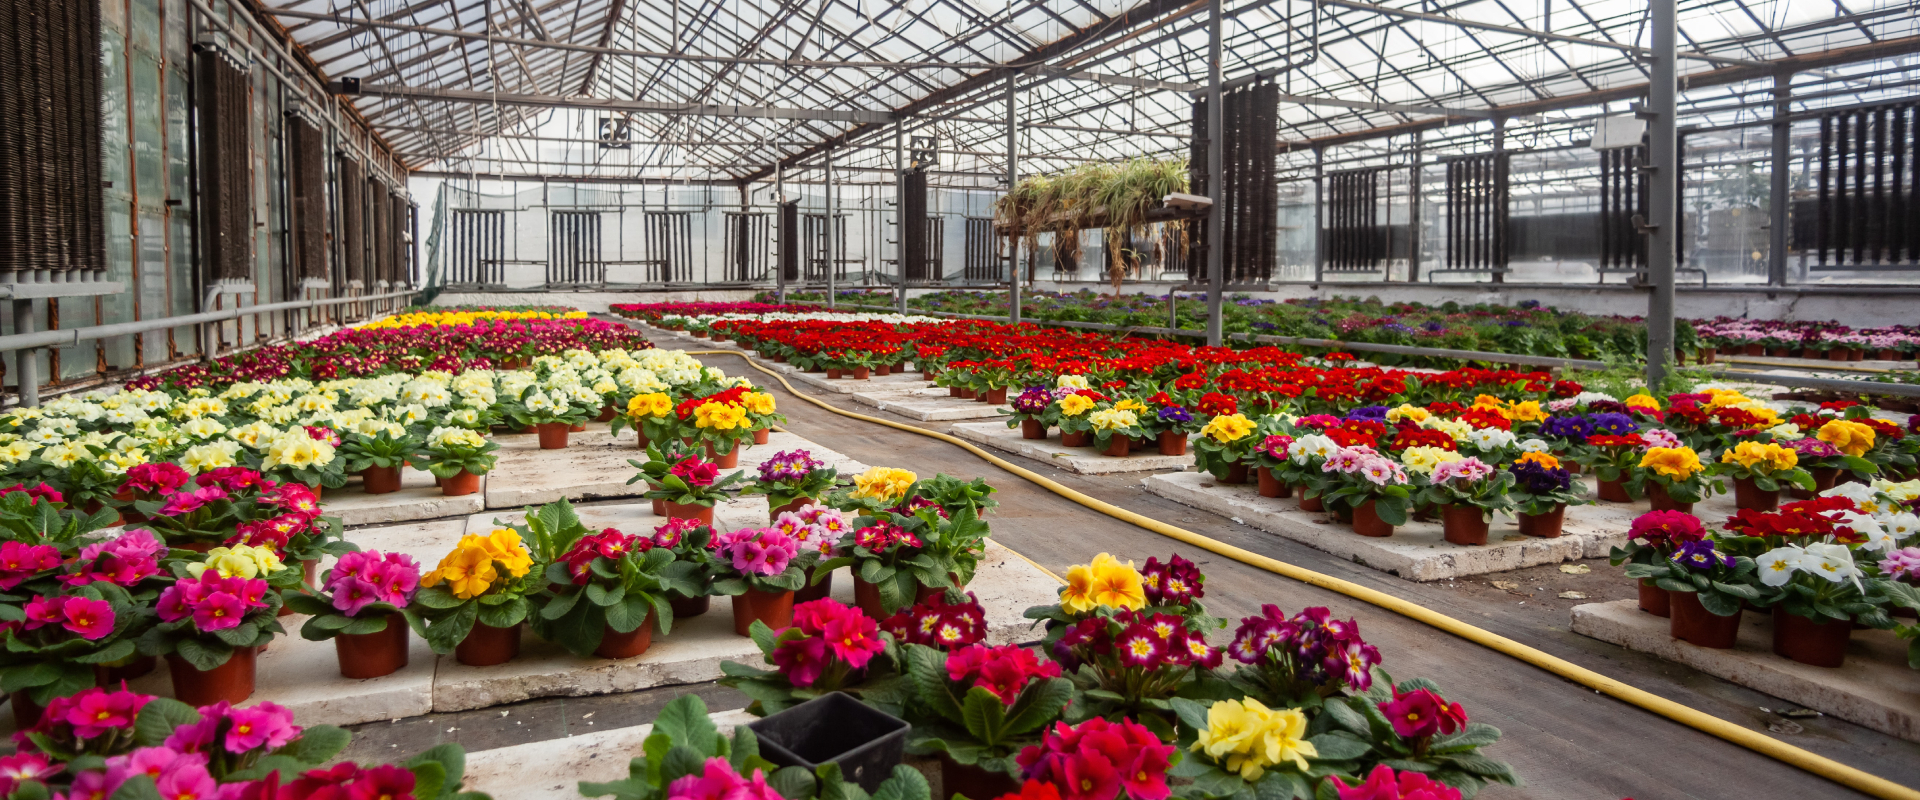 Monitoramento de temperatura e umidade para cultivo de flores